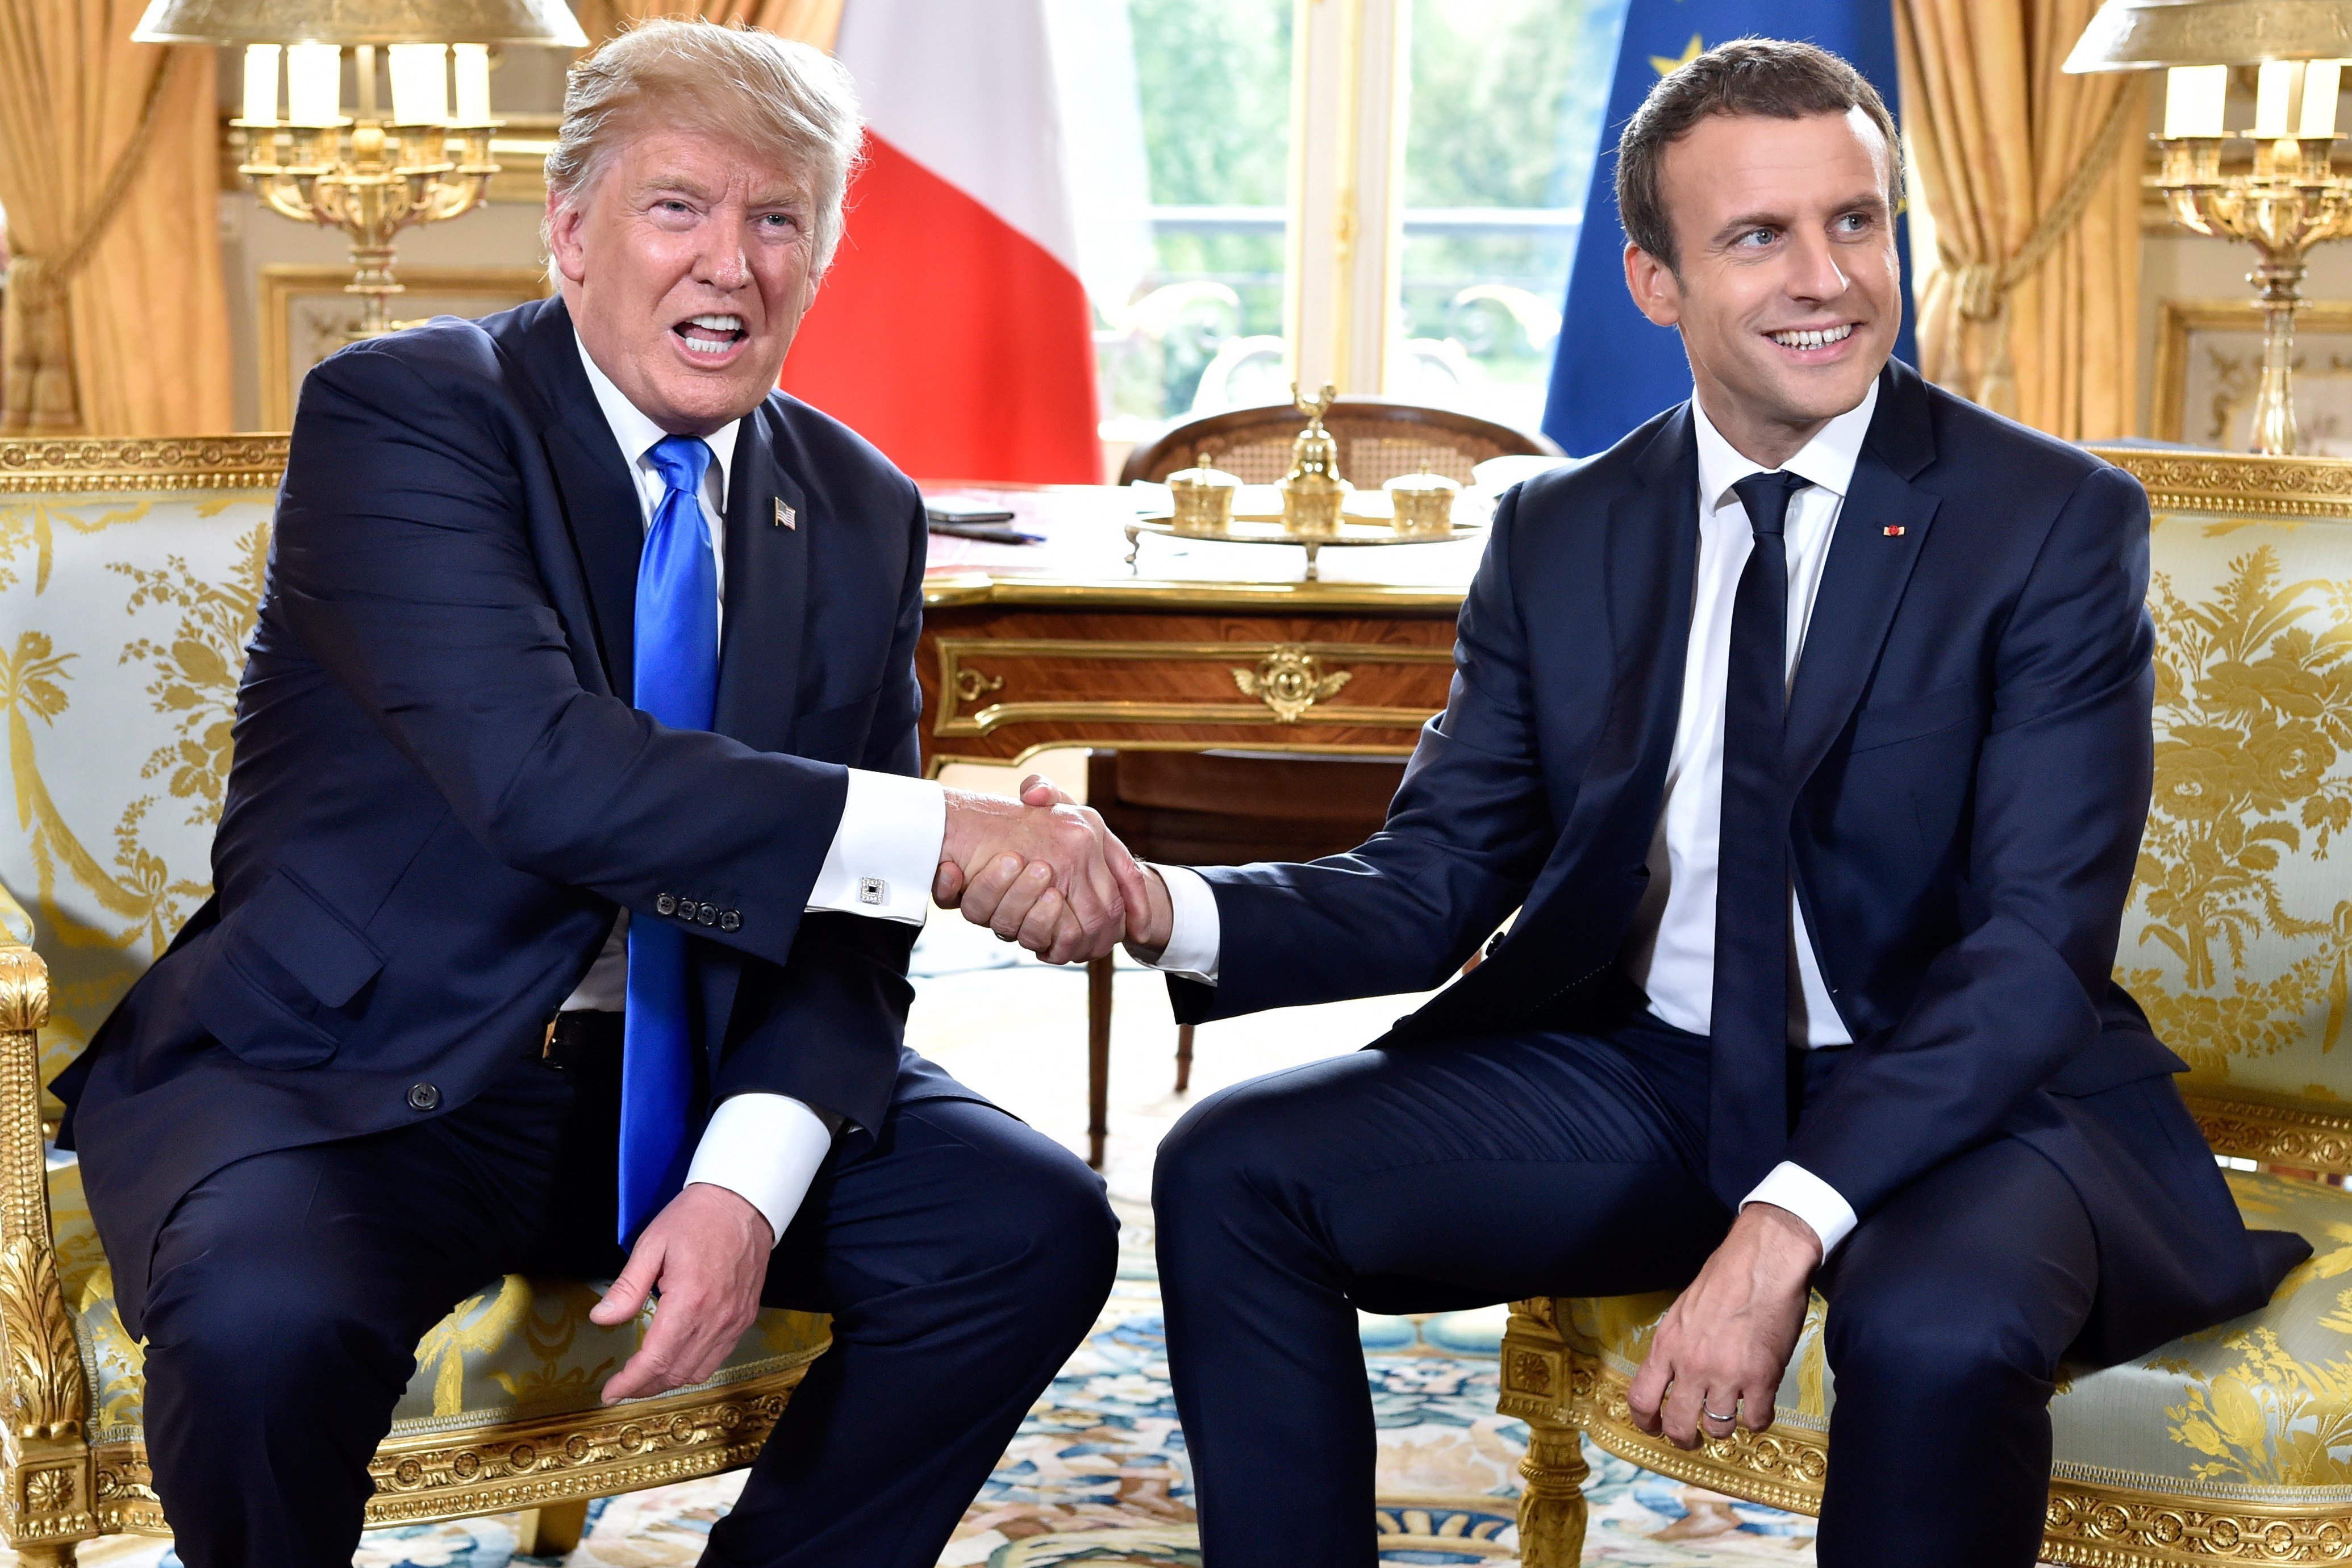 Sintonia entre Macron i Trump a la cimera de París